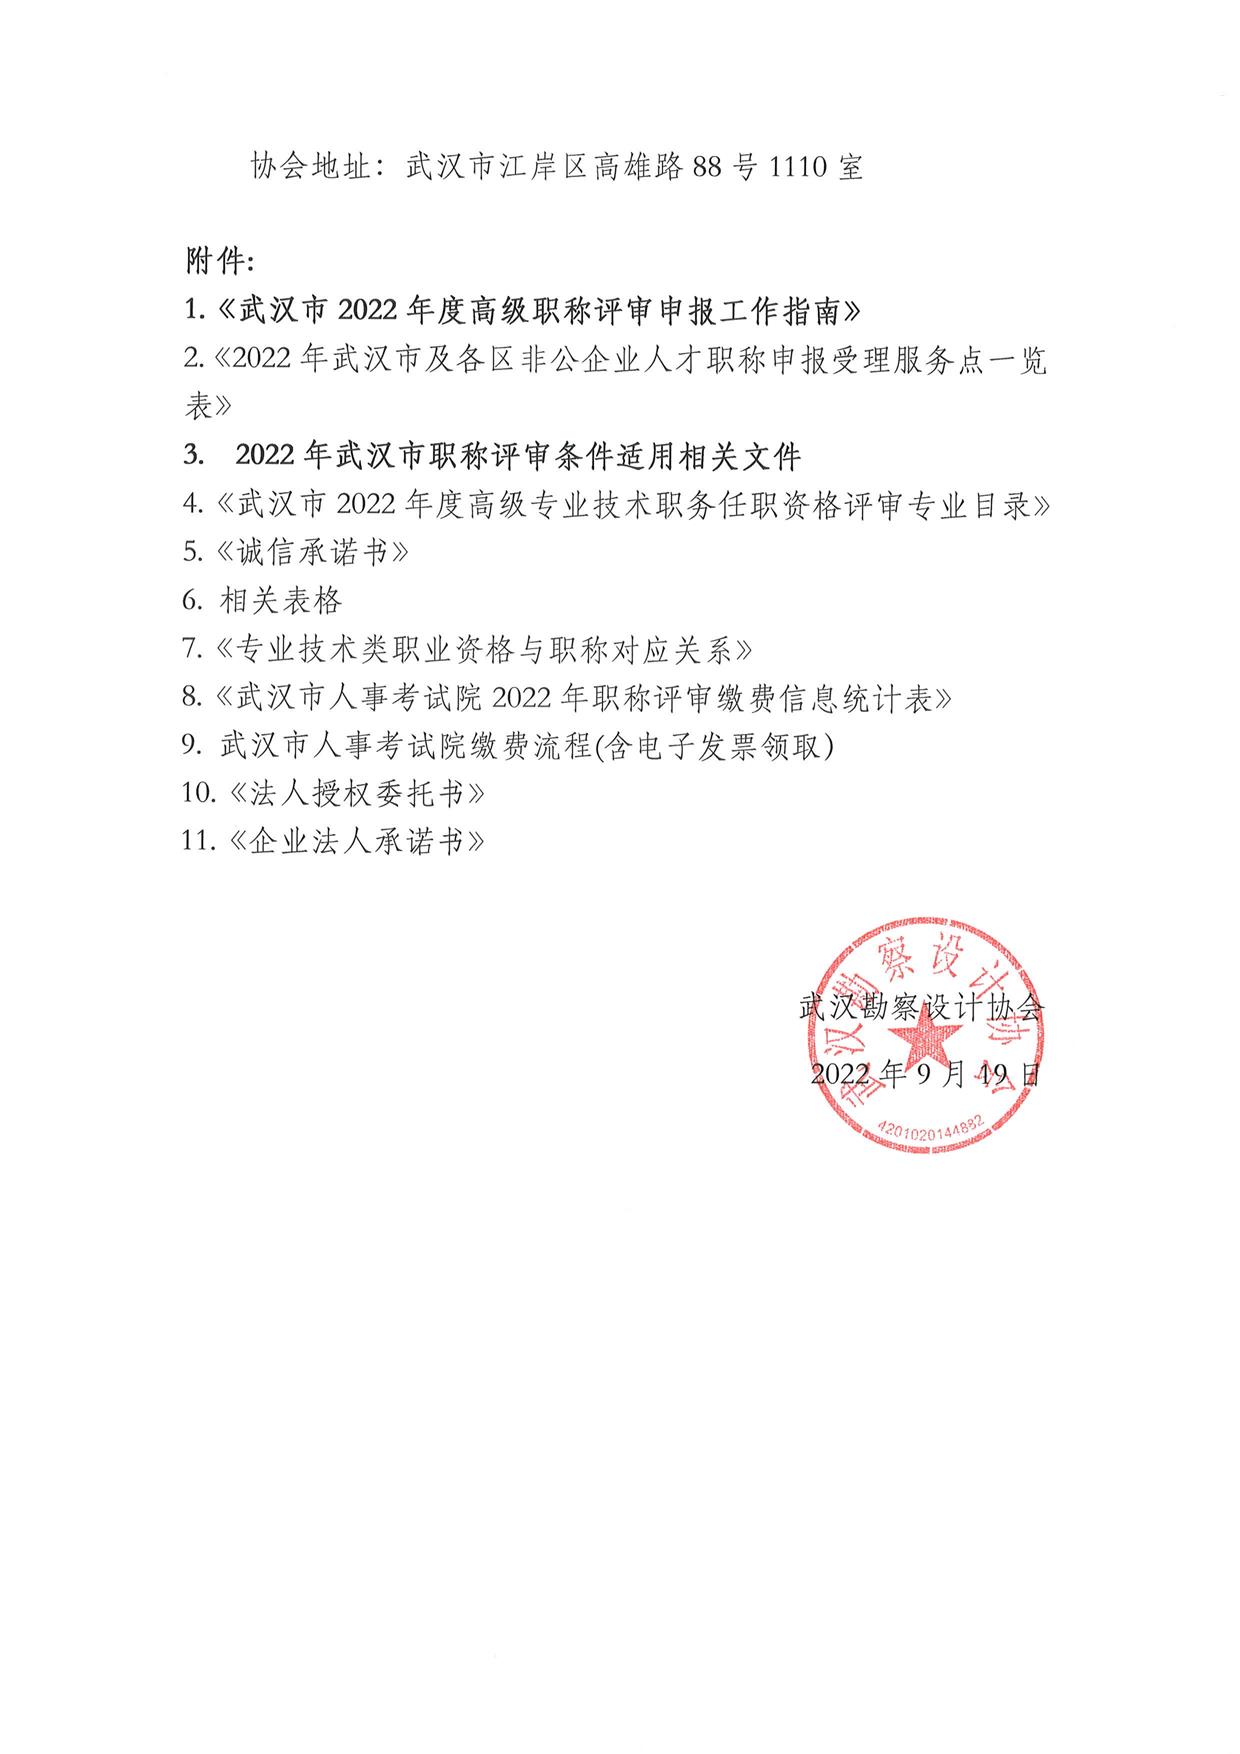 武汉勘察设计协会关于开展武汉市2022年度高级职称评审申报工作的通知